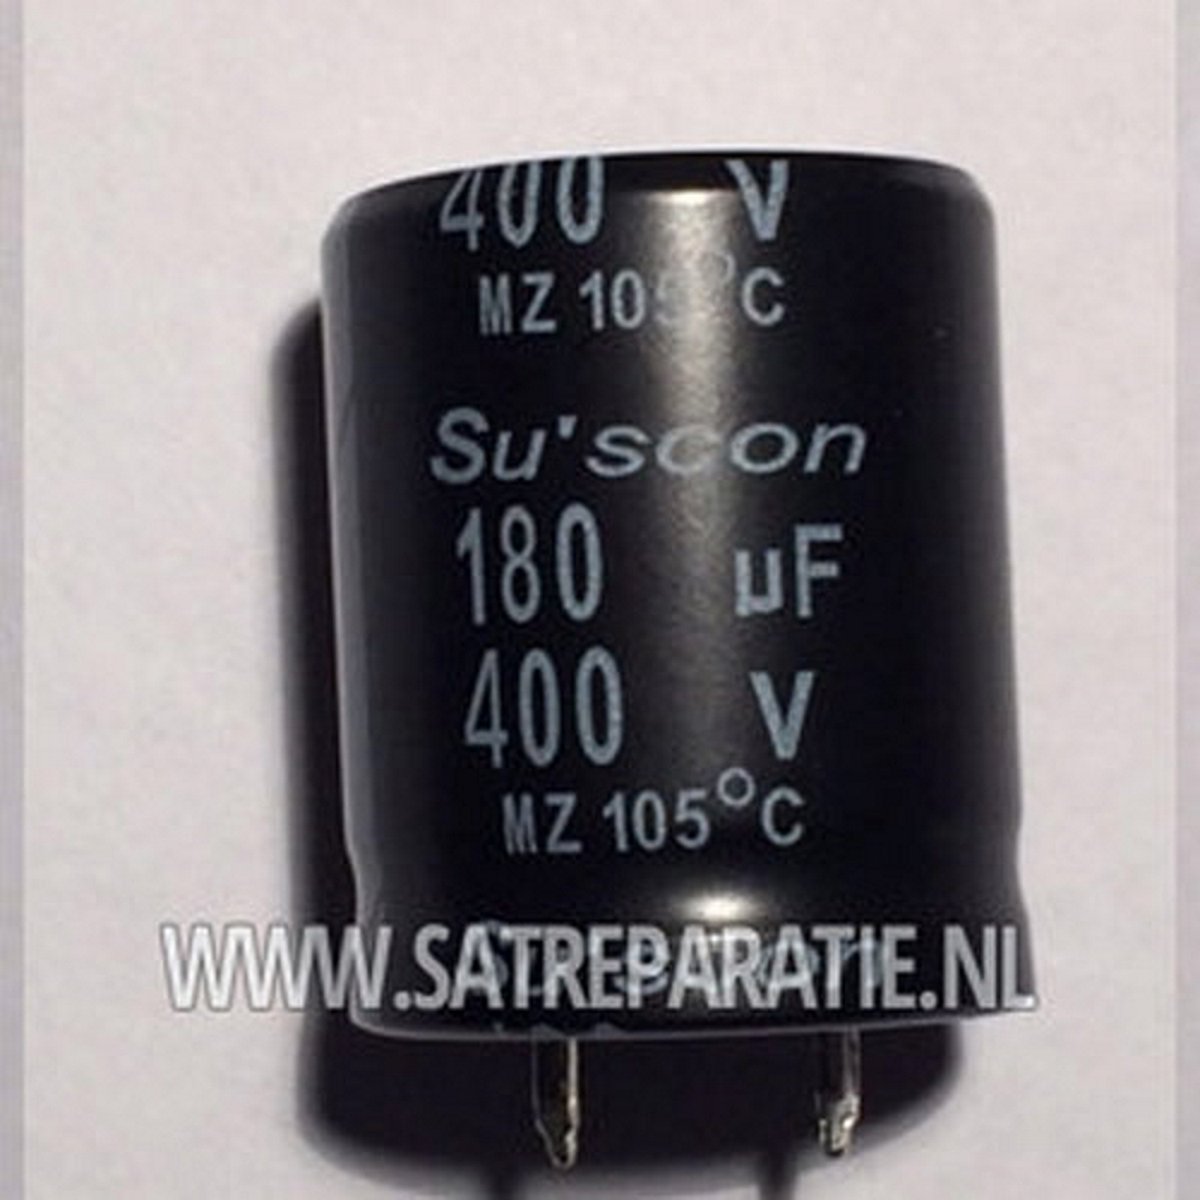 Condensateur électrolytique Su'scon 180uF/400V 25x30mm | Durée de Lifetime  8000 heures... | bol.com